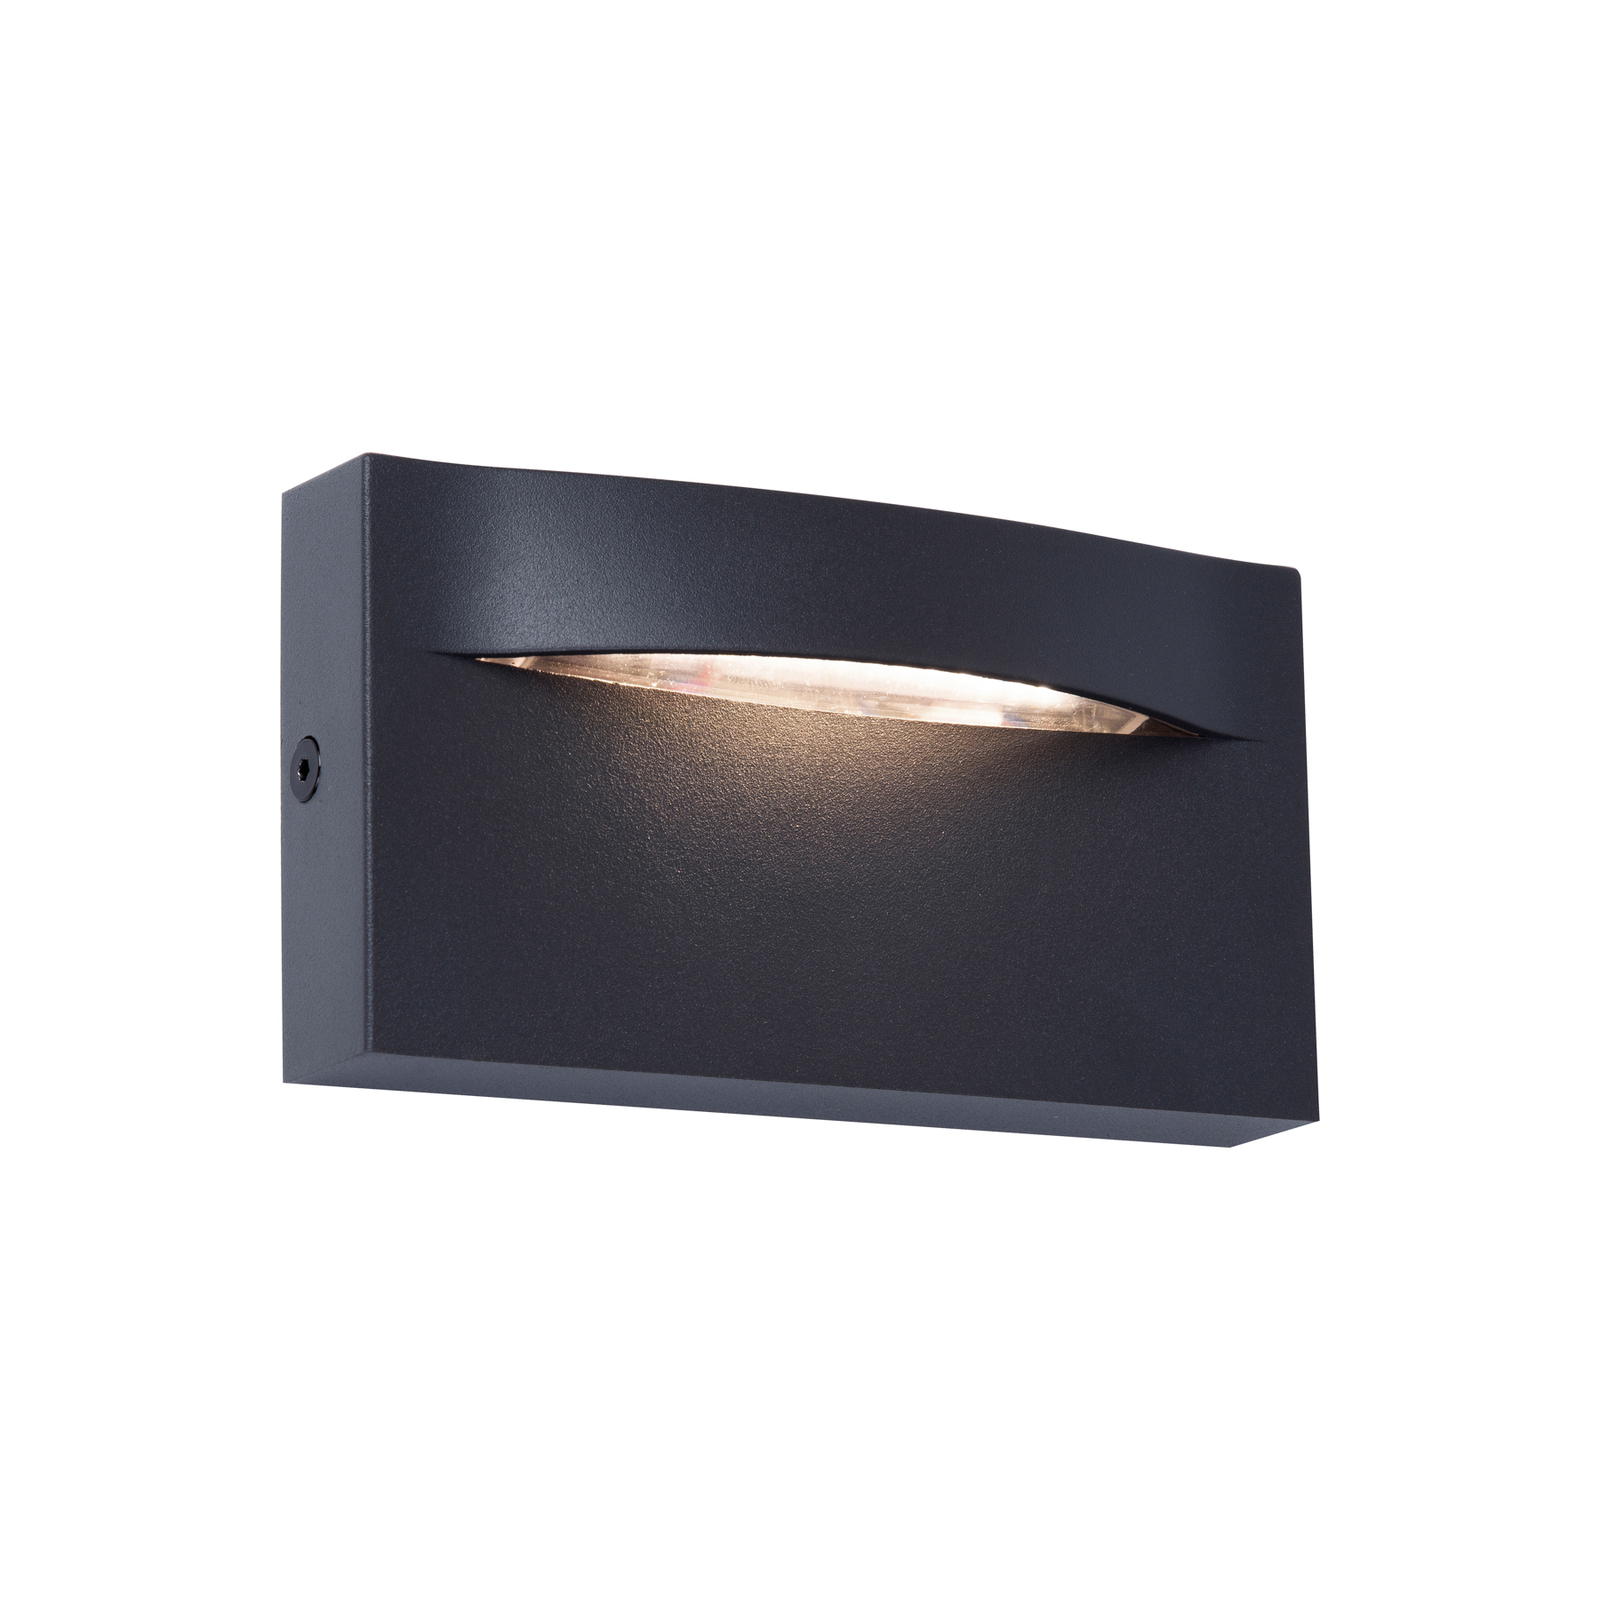 Kinkiet zewnętrzny LED Vita, ciemnoszary, 13,7 x 7,5 cm